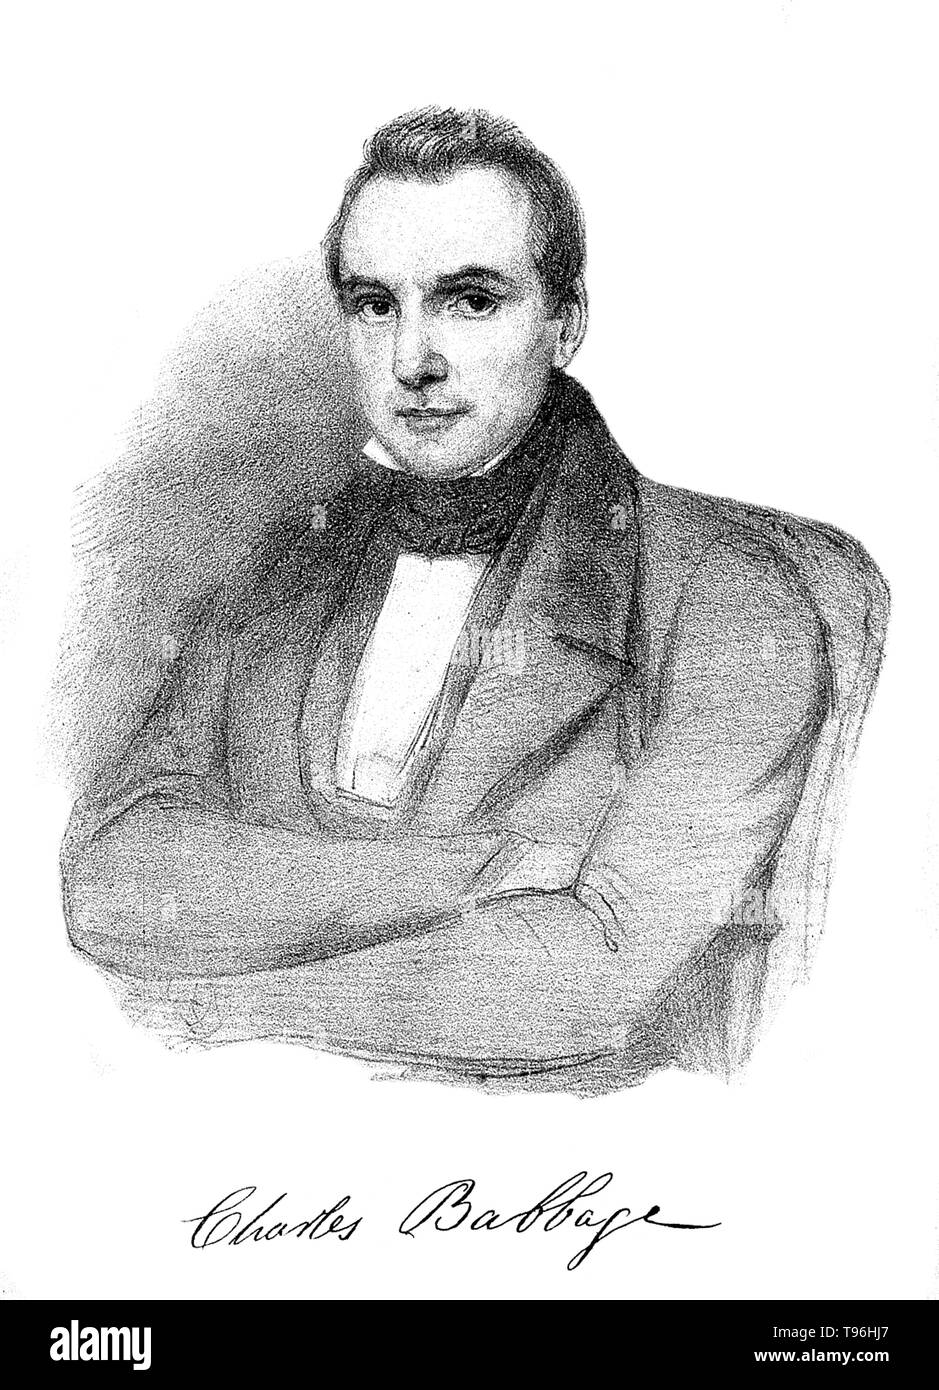 Charles Babbage (26 dicembre 1791 - 18 ottobre 1871) era un polymath inglese. Un matematico e filosofo, inventore e ingegnere meccanico, egli è ricordato per originari del concetto di digital computer programmabile. Foto Stock